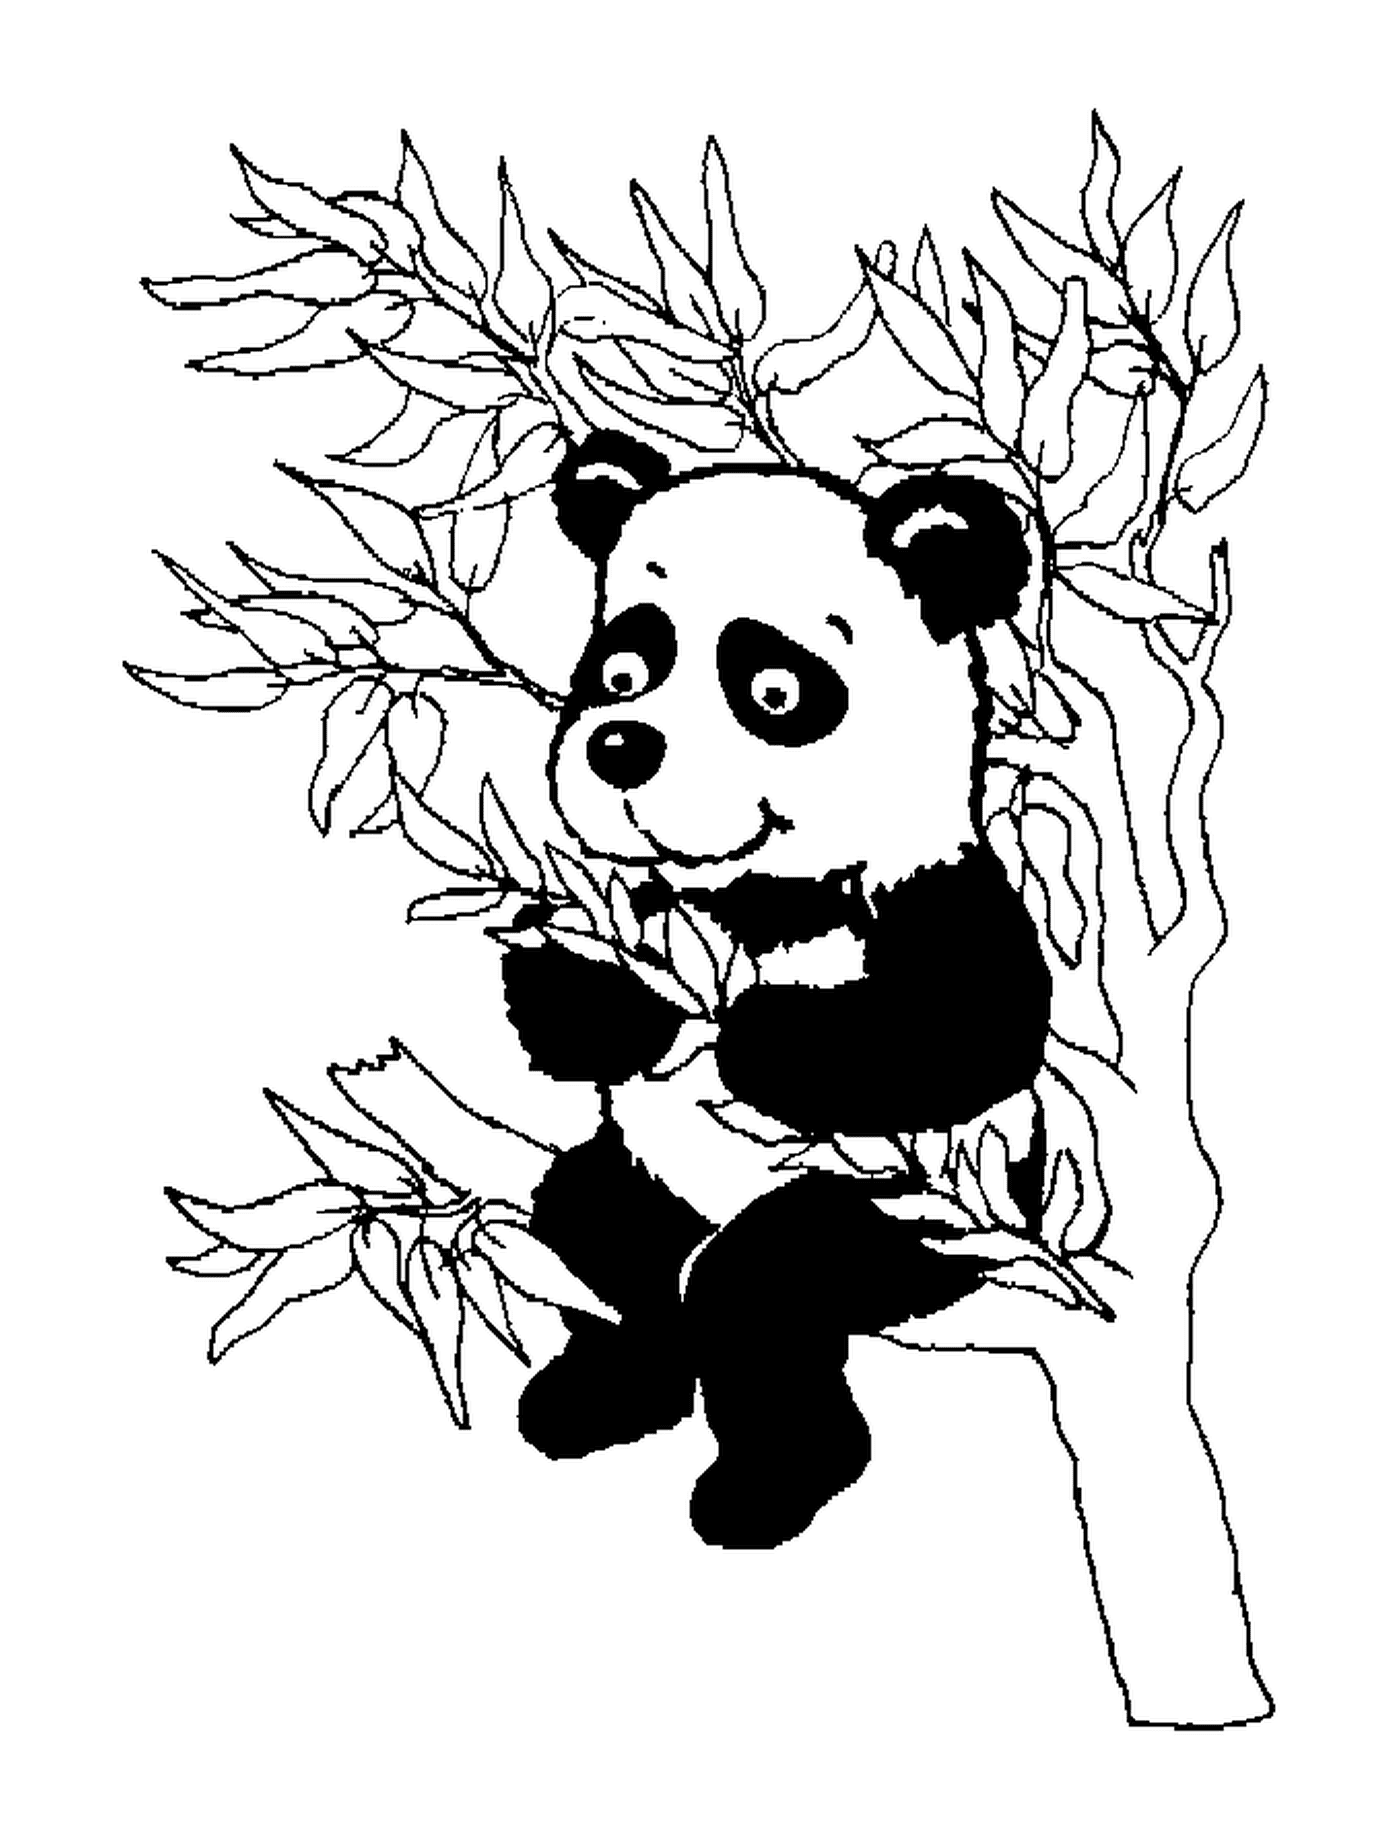  A panda in a tree 